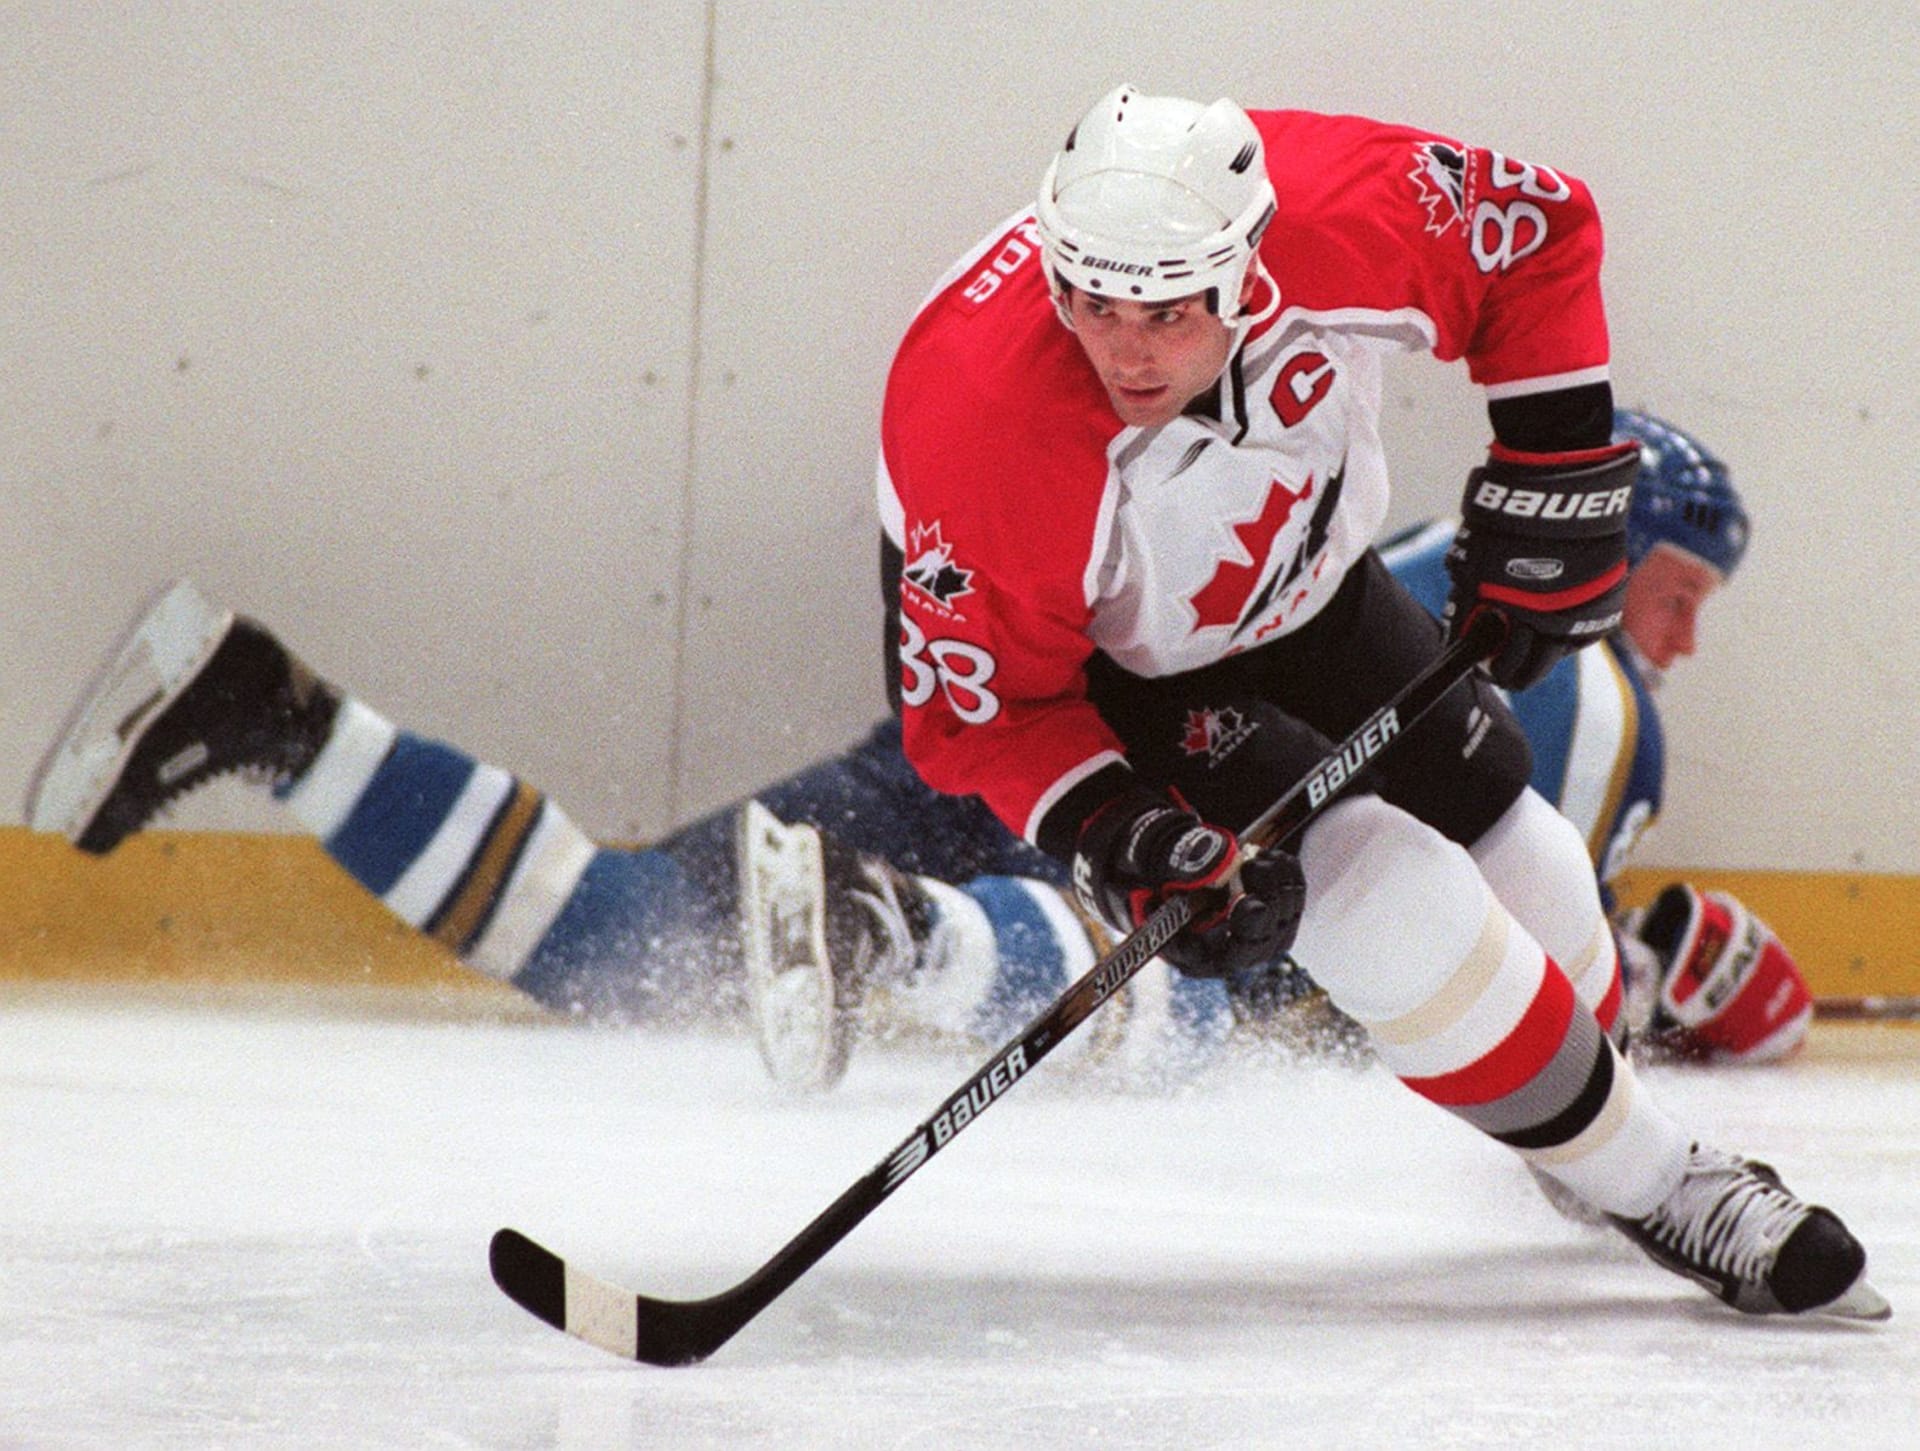 V roce 1991 byl jako jednička vstupního draftu NHL vybrán Eric Lindros. Vzápětí po volbě však prohlásil, že do Quebeku za žádnou cenu nepůjde a raději stráví následující sezonu mimo NHL.